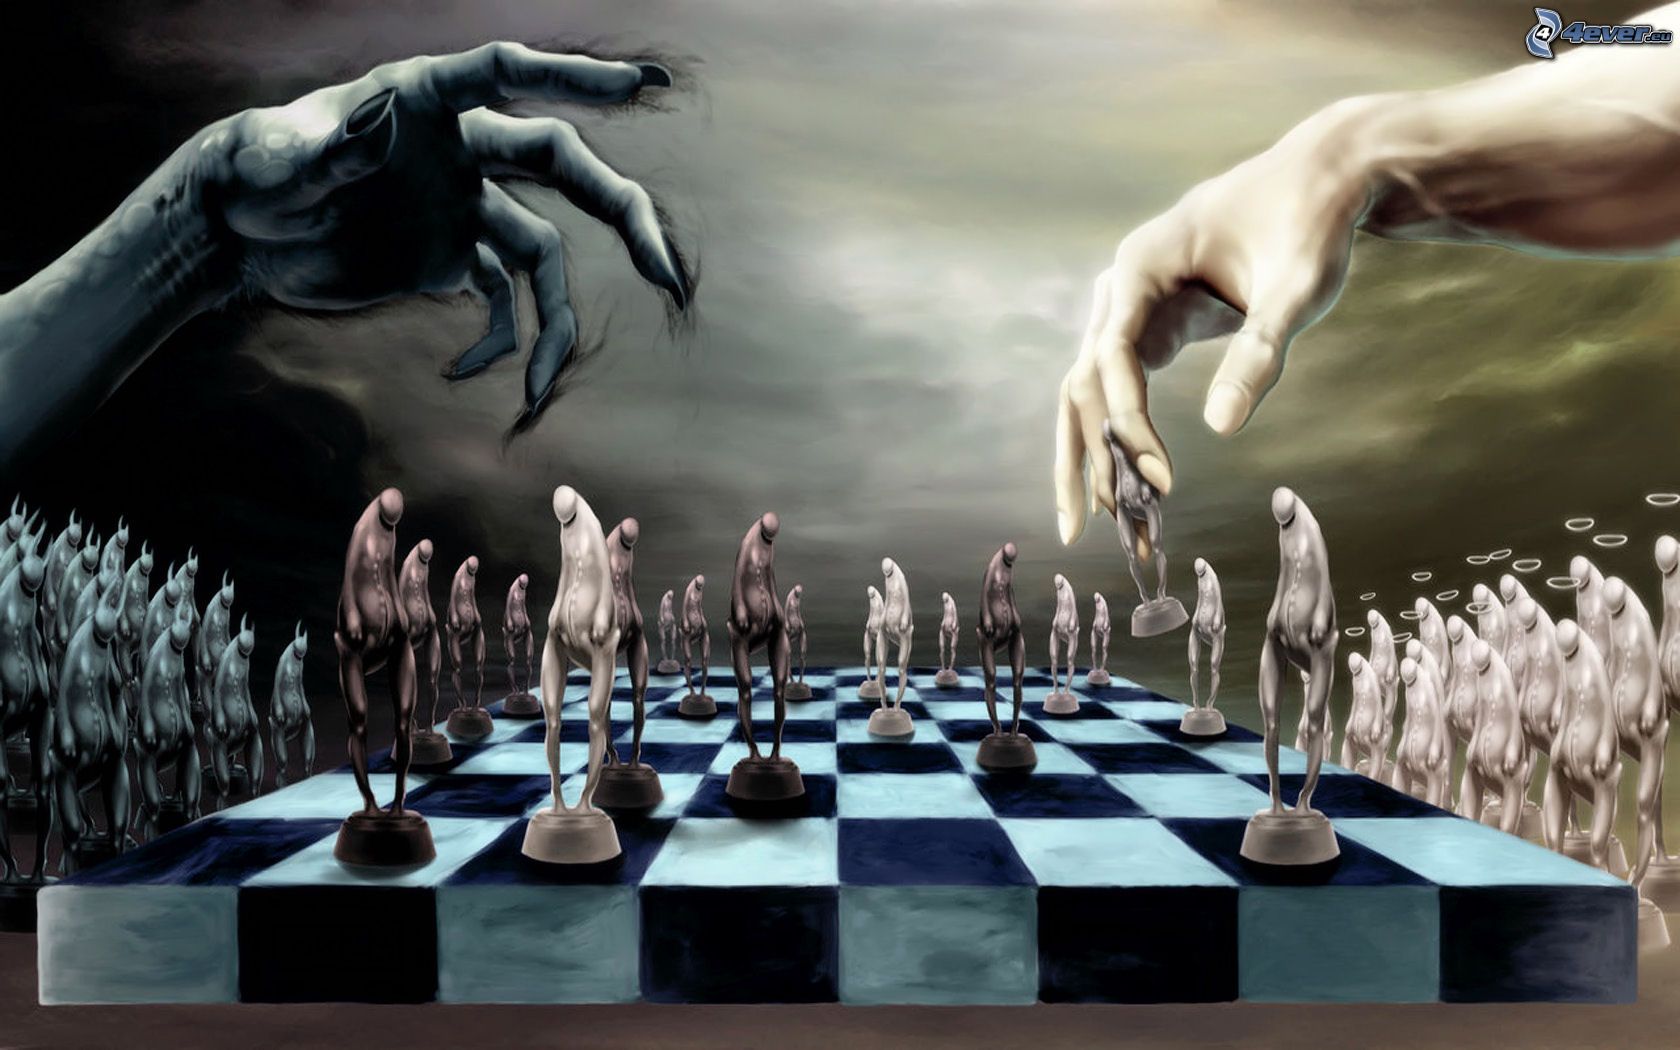 Diablo de llamas con tablero de ajedrez - ajedrez | Pegatina